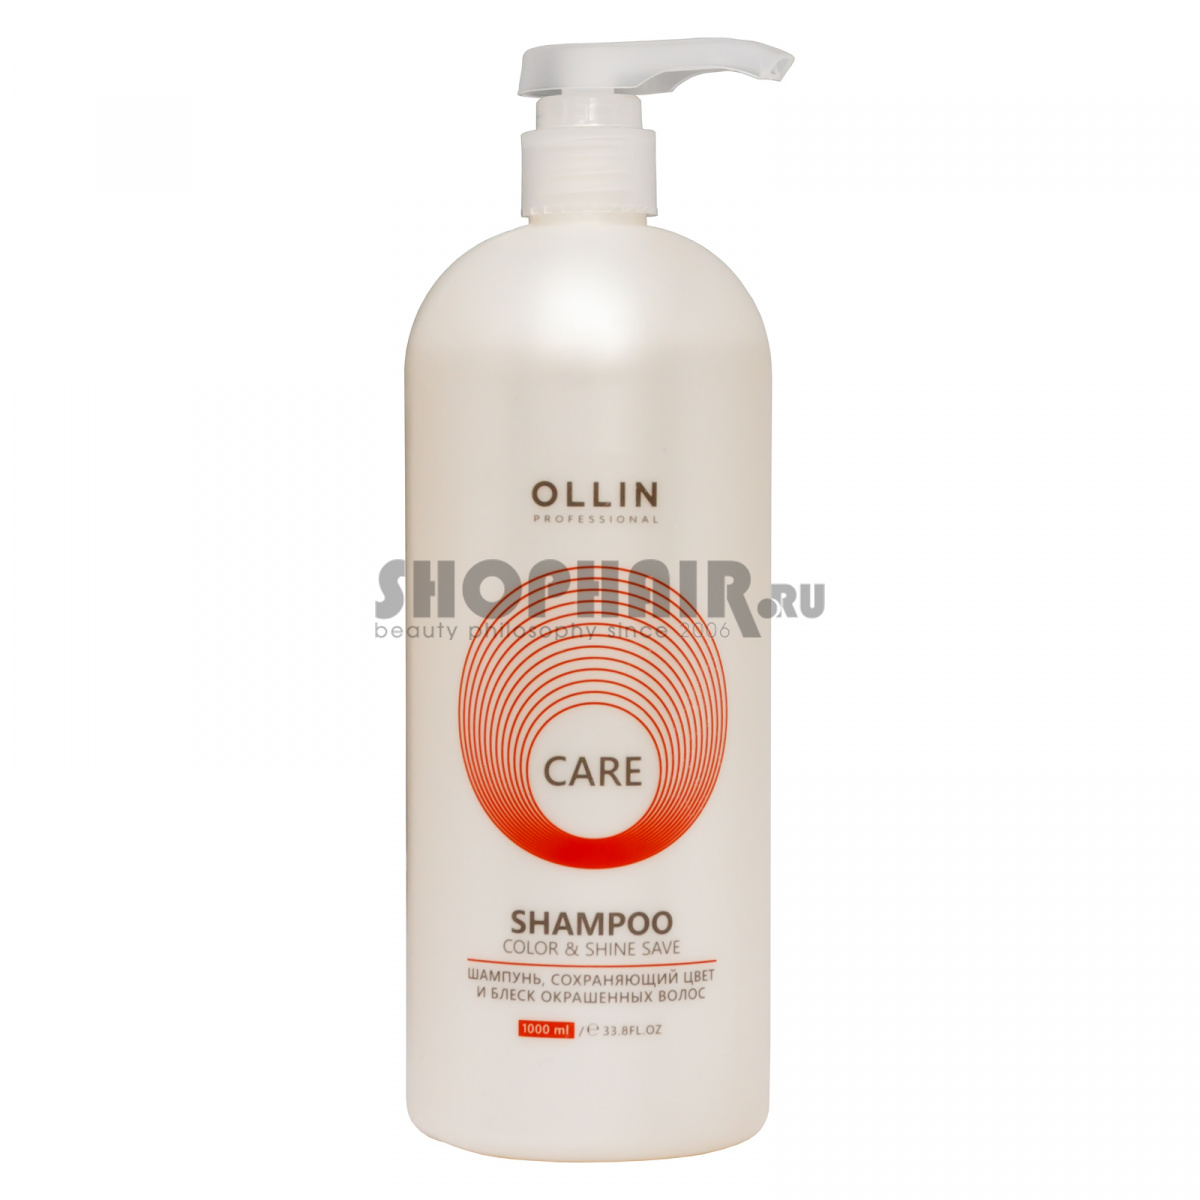 Ollin Professional Care Color and Shine Save Shampoo - Шампунь, сохраняющий цвет и блеск окрашенных волос 1000 мл Ollin Professional (Россия) купить по цене 528 руб.